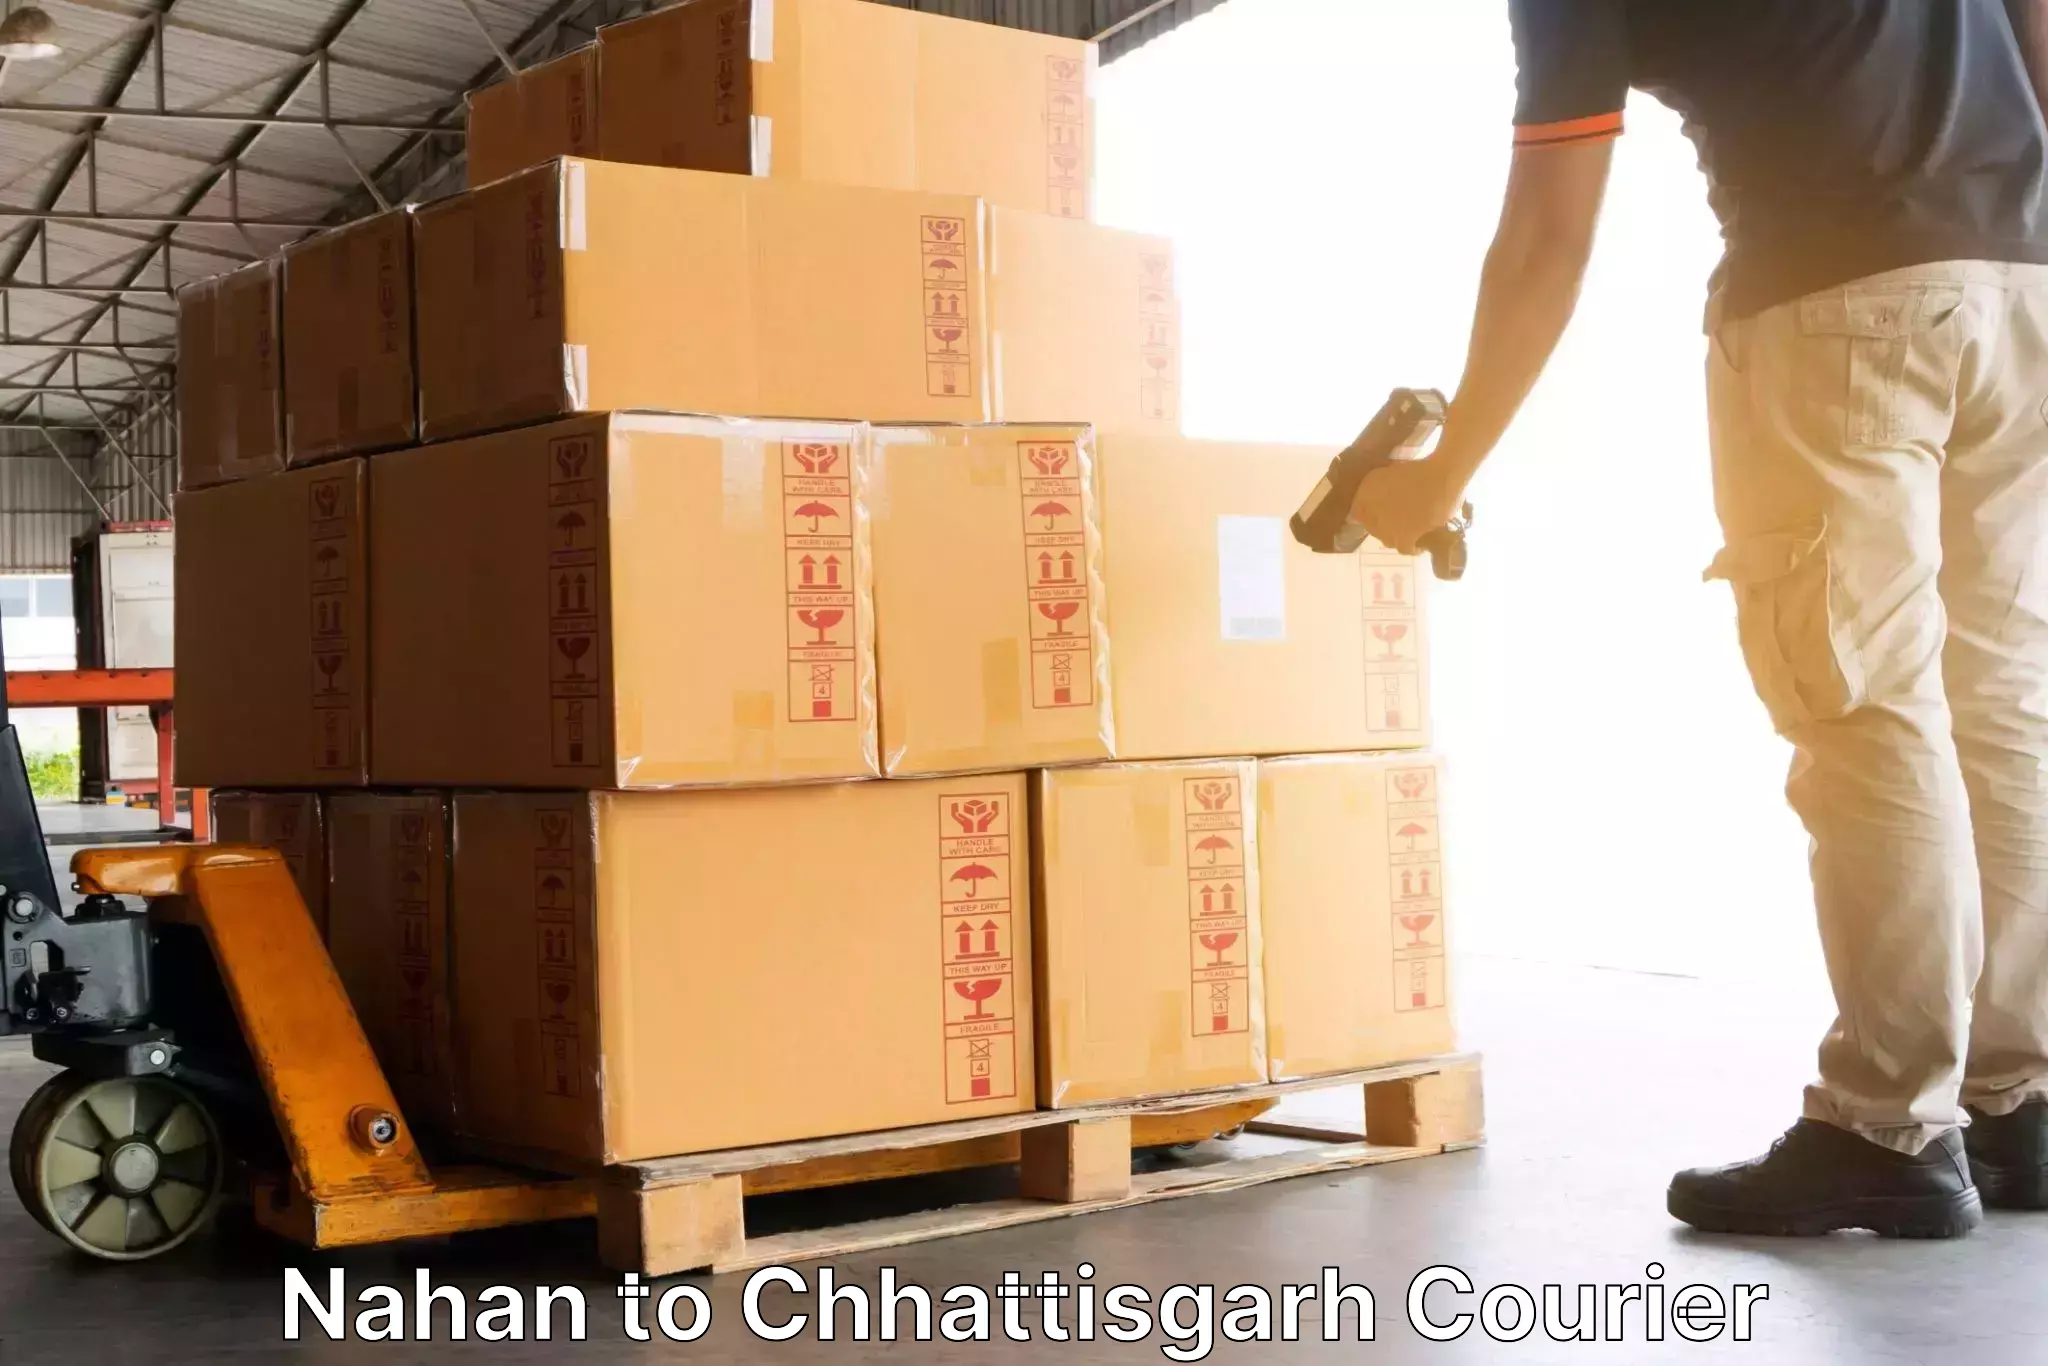 Efficient parcel service Nahan to Patan Durg